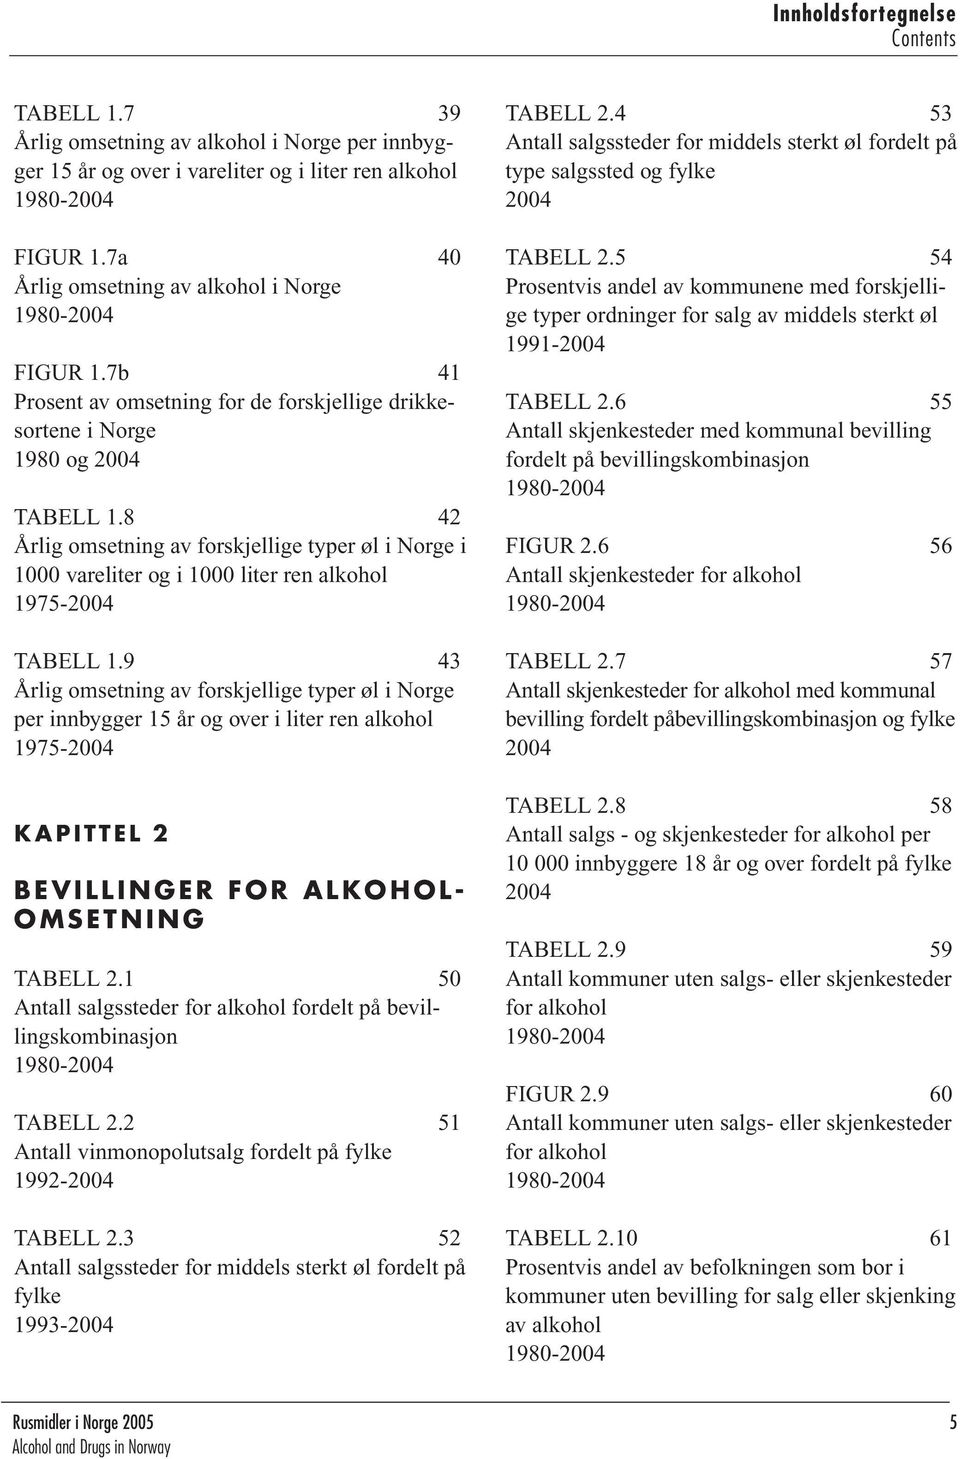 8 42 Årlig omsetning av forskjellige typer øl i Norge i 1000 vareliter og i 1000 liter ren alkohol 1975-2004 TABELL 1.